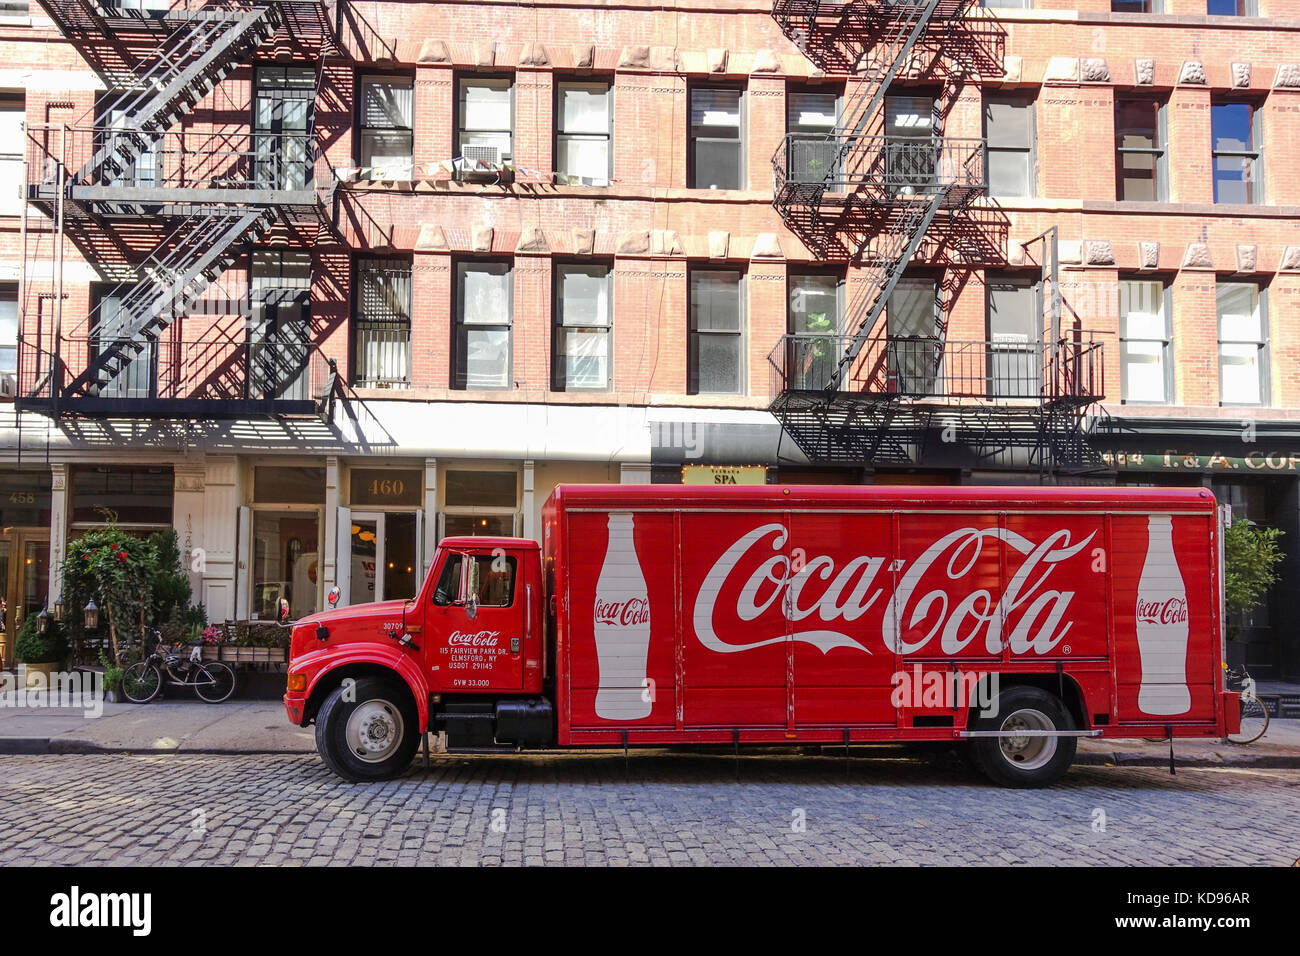 Coca Cola américain des camions de livraison en face de bâtiment en briques typique de New York avec le feu s'échappe, Manhattan, États-Unis. Banque D'Images